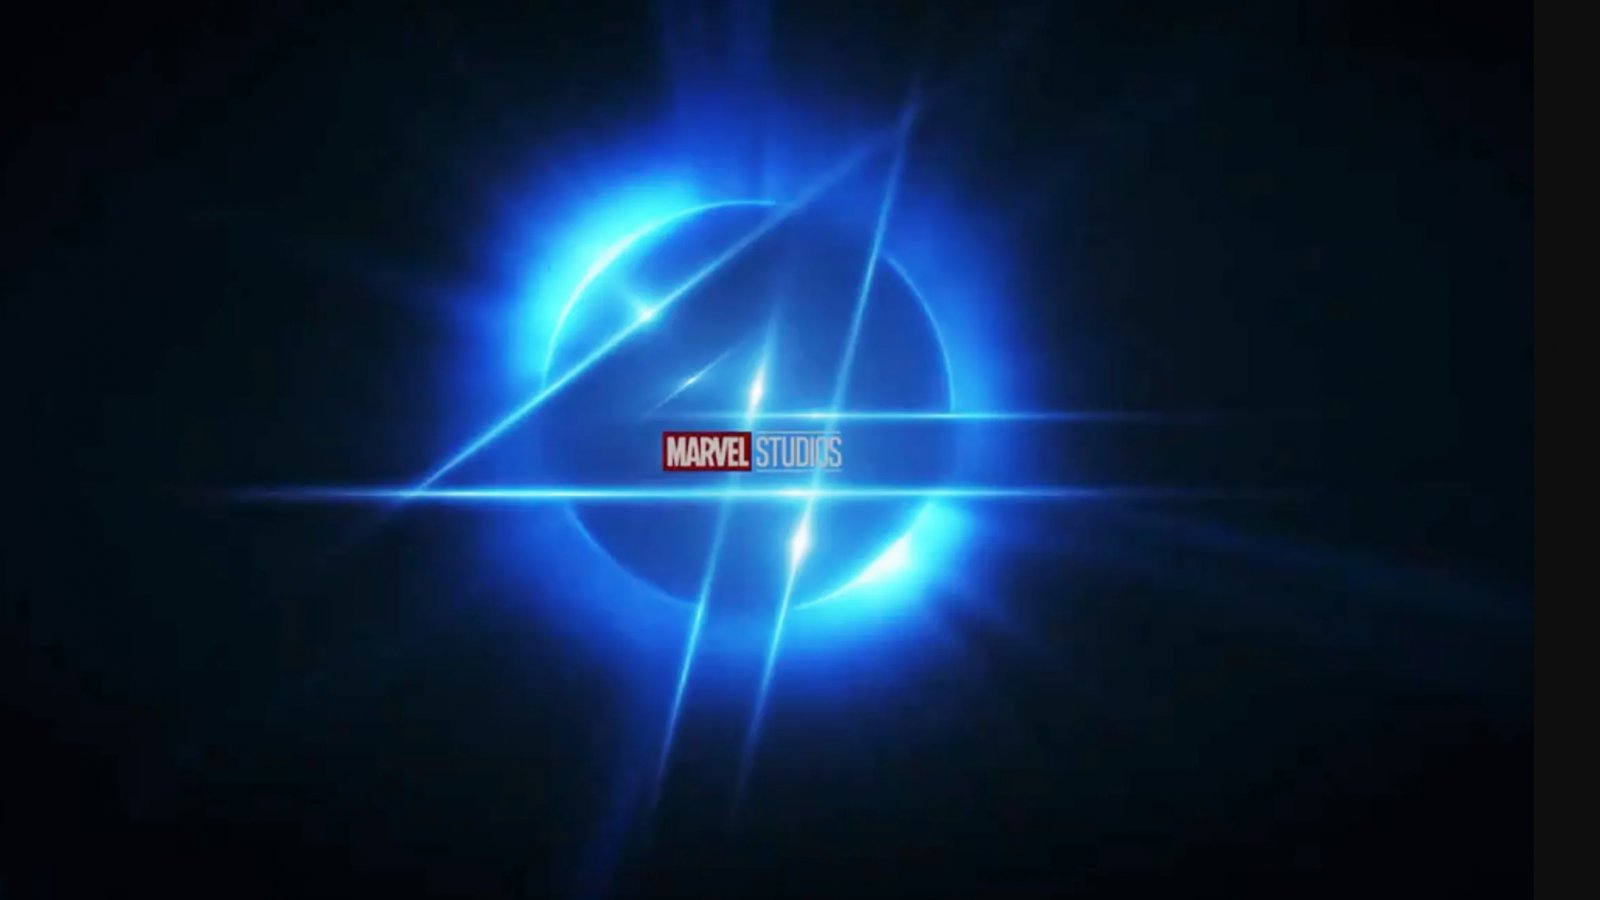 Fantastici 4, il regista di Ant-Man 3 ha visto i primi concept art del reboot: 'Sarà grandioso'